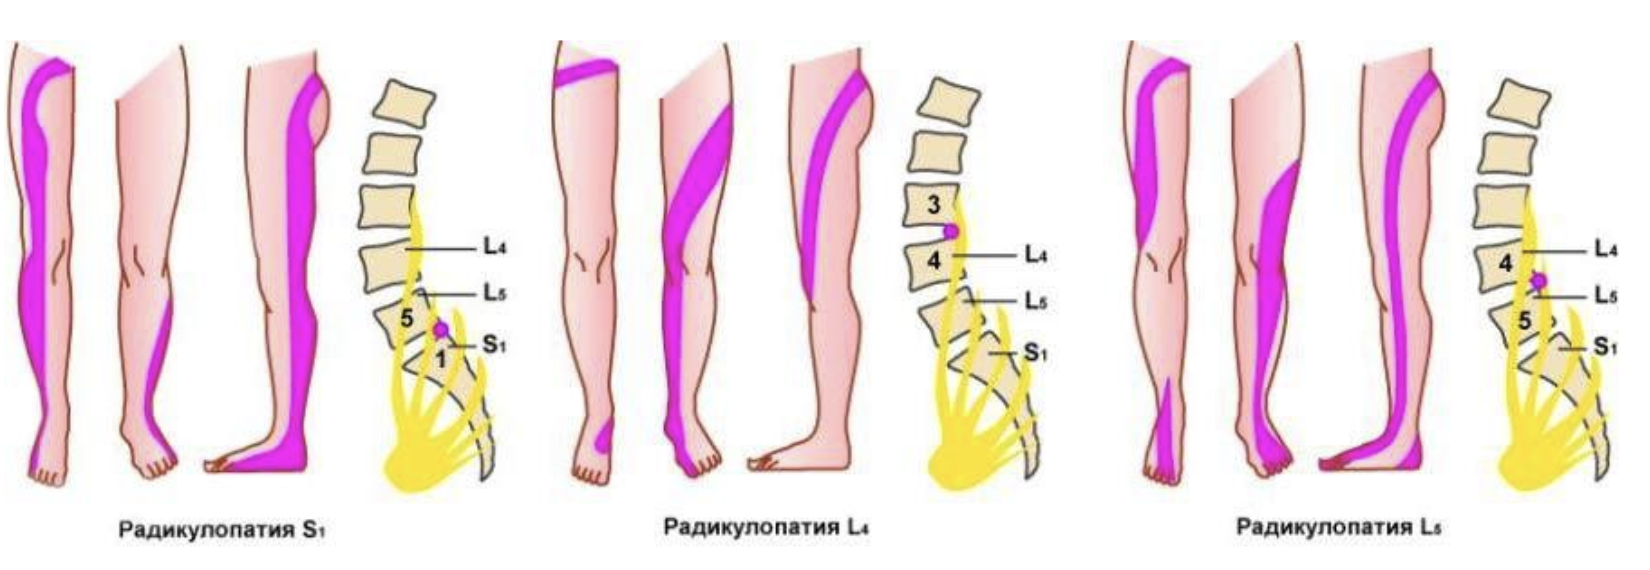 Боль в ногах от бедра до стопы. Вертеброгенная радикулопатия поясничного отдела l5 s1. Радикулопатия диска l3-l4. Радикулопатия l2-l3. Синдром корешка l4 диск l3-l4.